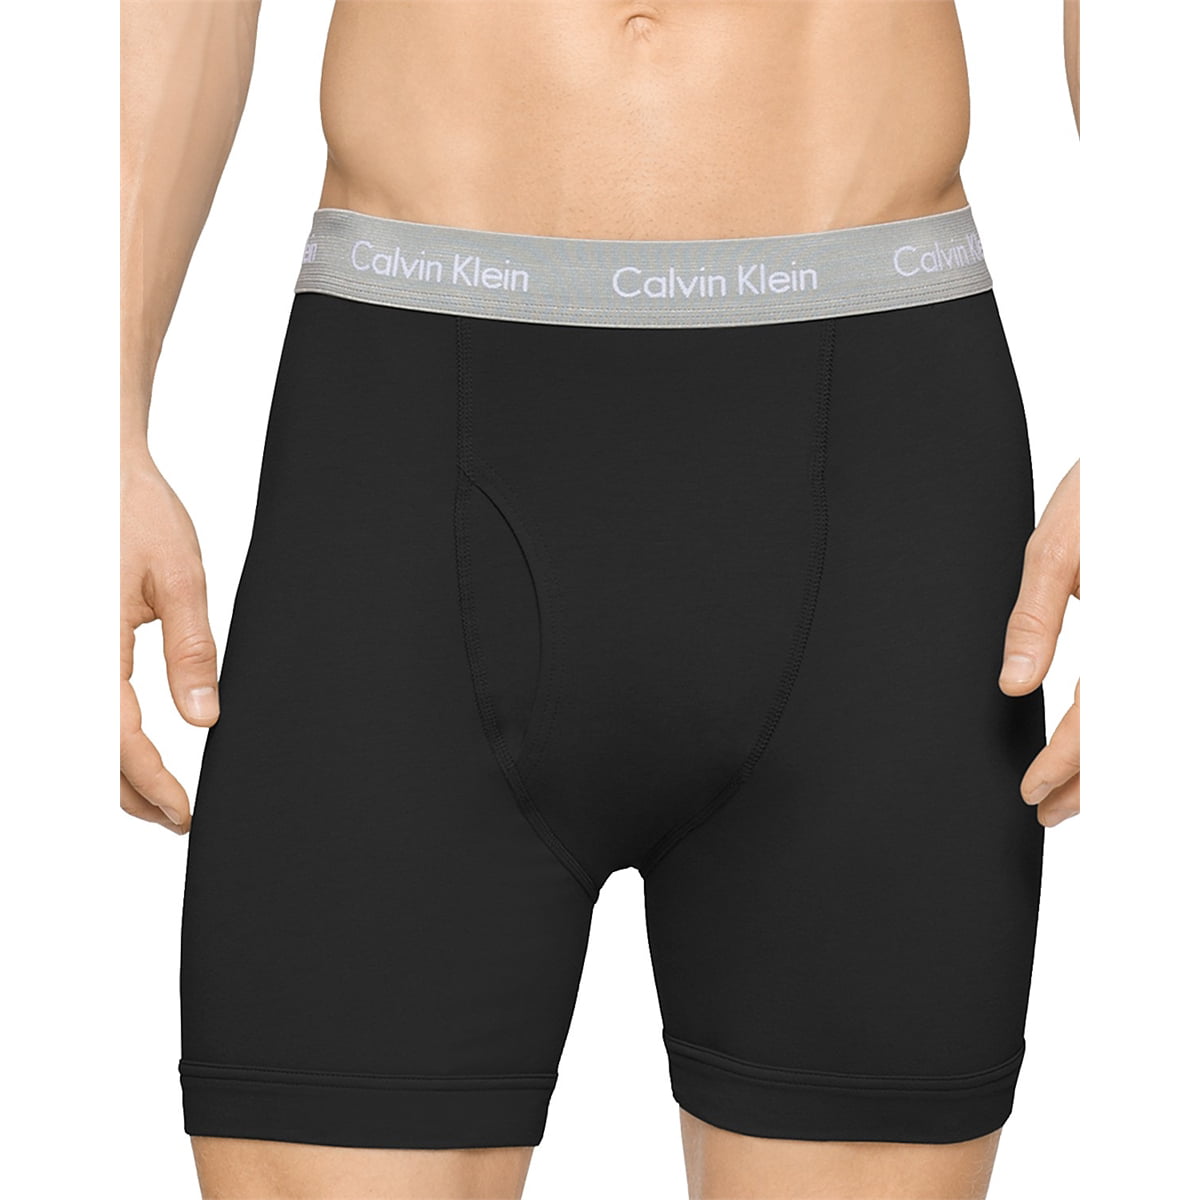 zweer fax Toestand Calvin Klein Underwear Men 3-pack Cotton Stretch Boxer Brief Black -  Walmart.com